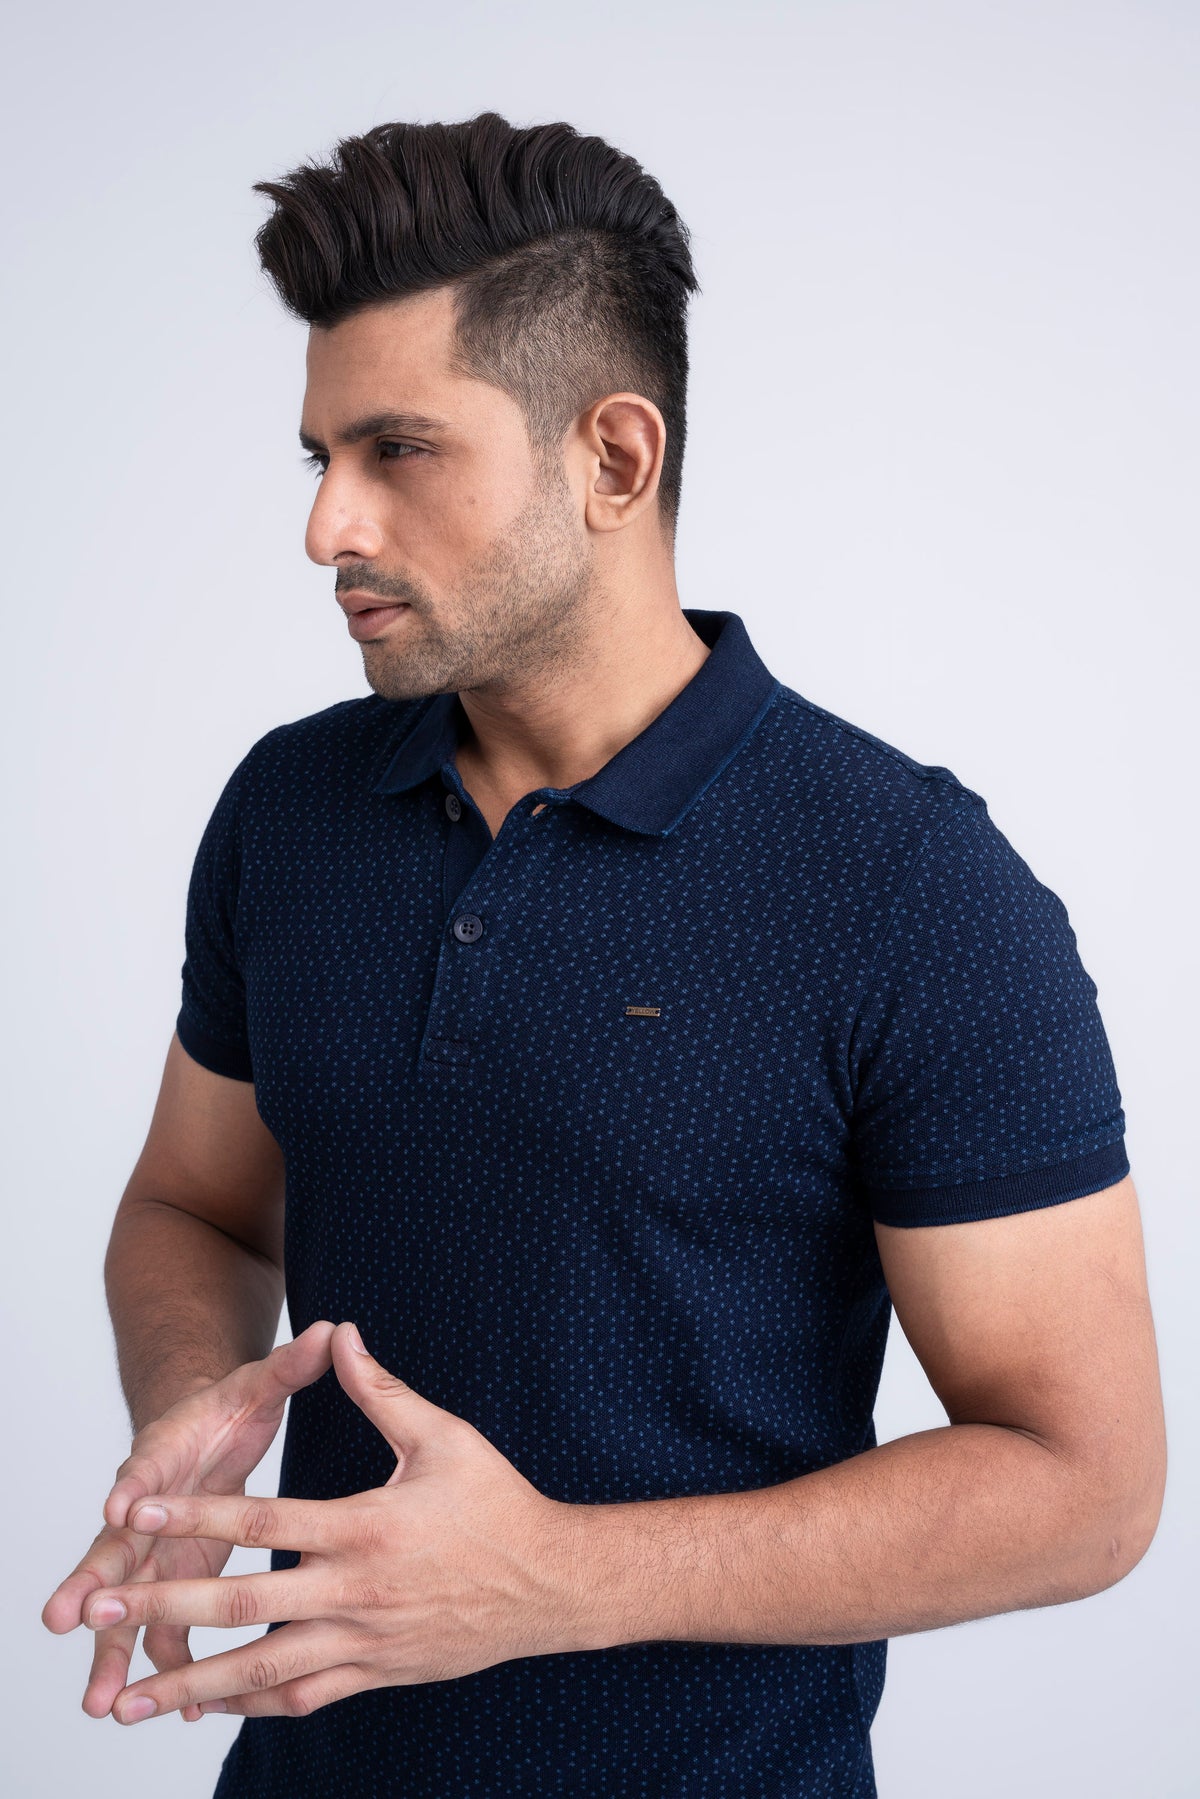 Men's Indigo Laser Printed Polo Shirt